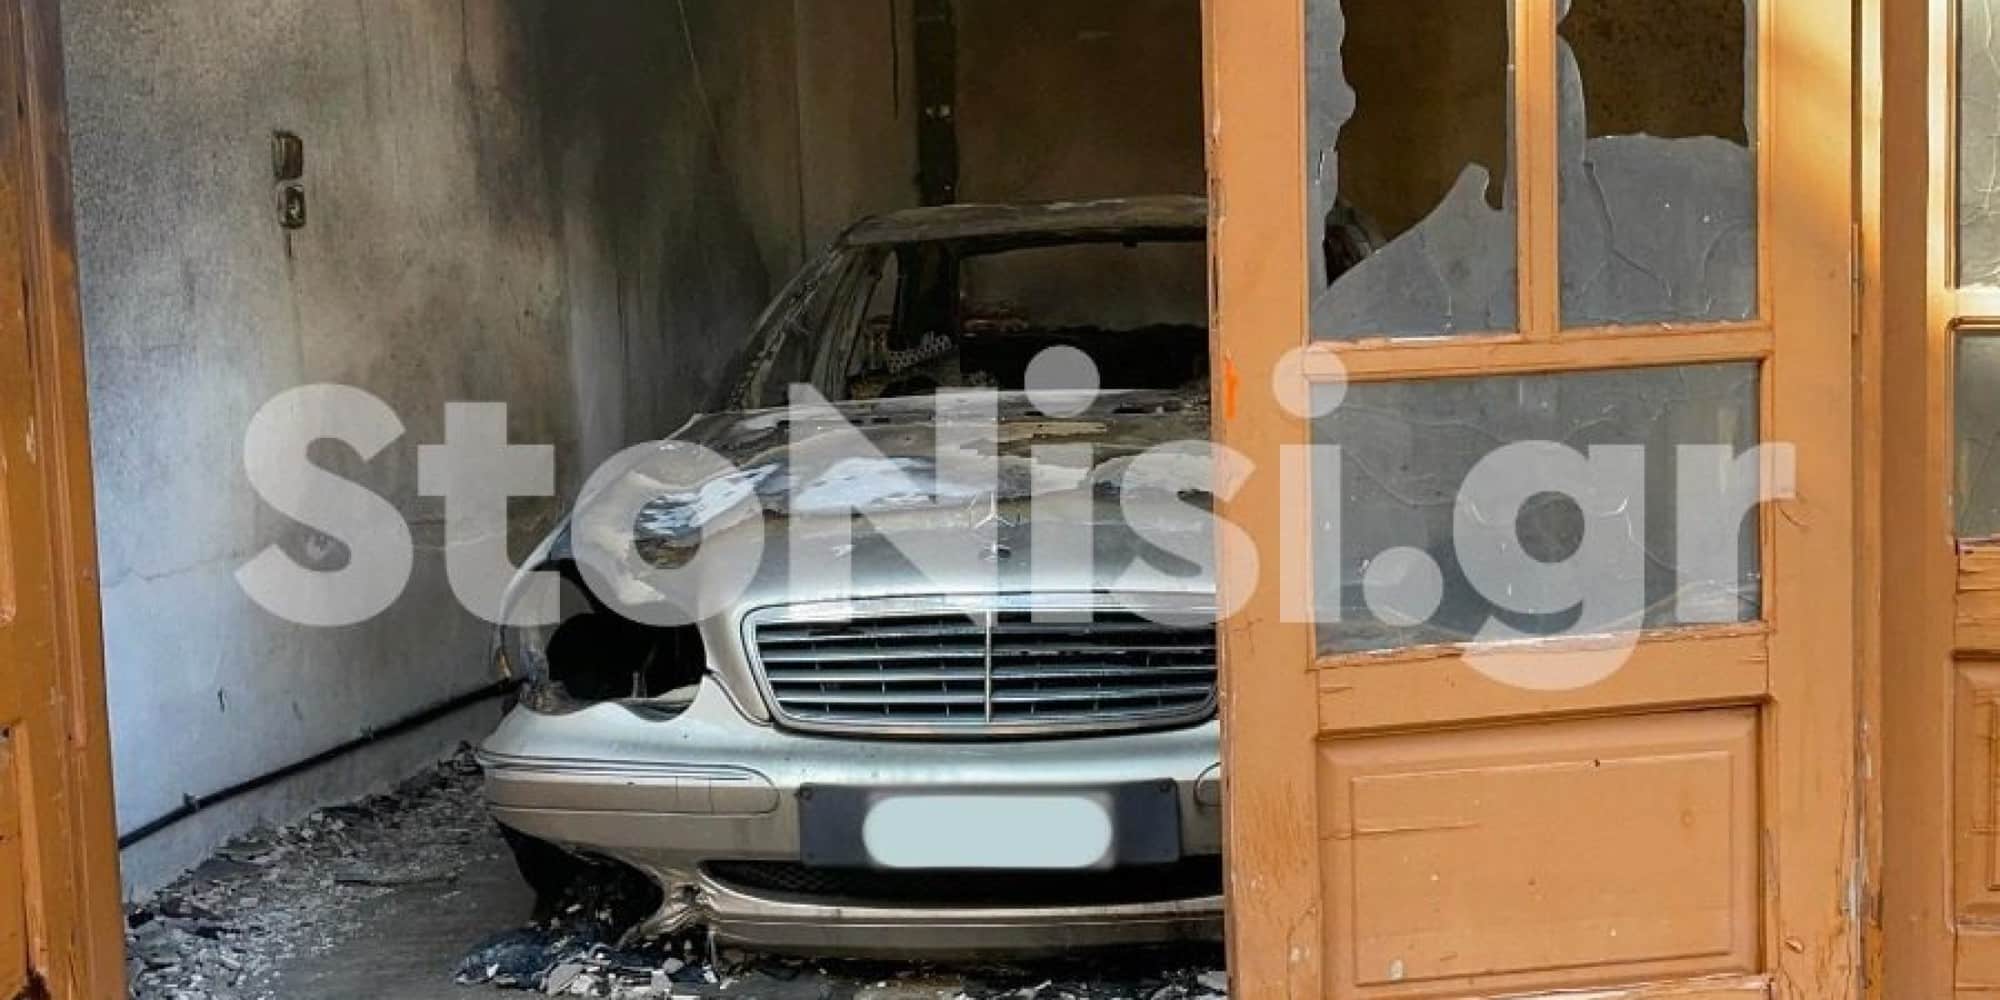 emprismos 19 9 2022 1 - Η ιστορία πίσω από τον εμπρησμό στη Λέσβο - Ο 71χρονος έκαψε το σπίτι και το κατάστημα του αδερφού του για θέματα κληρονομιάς